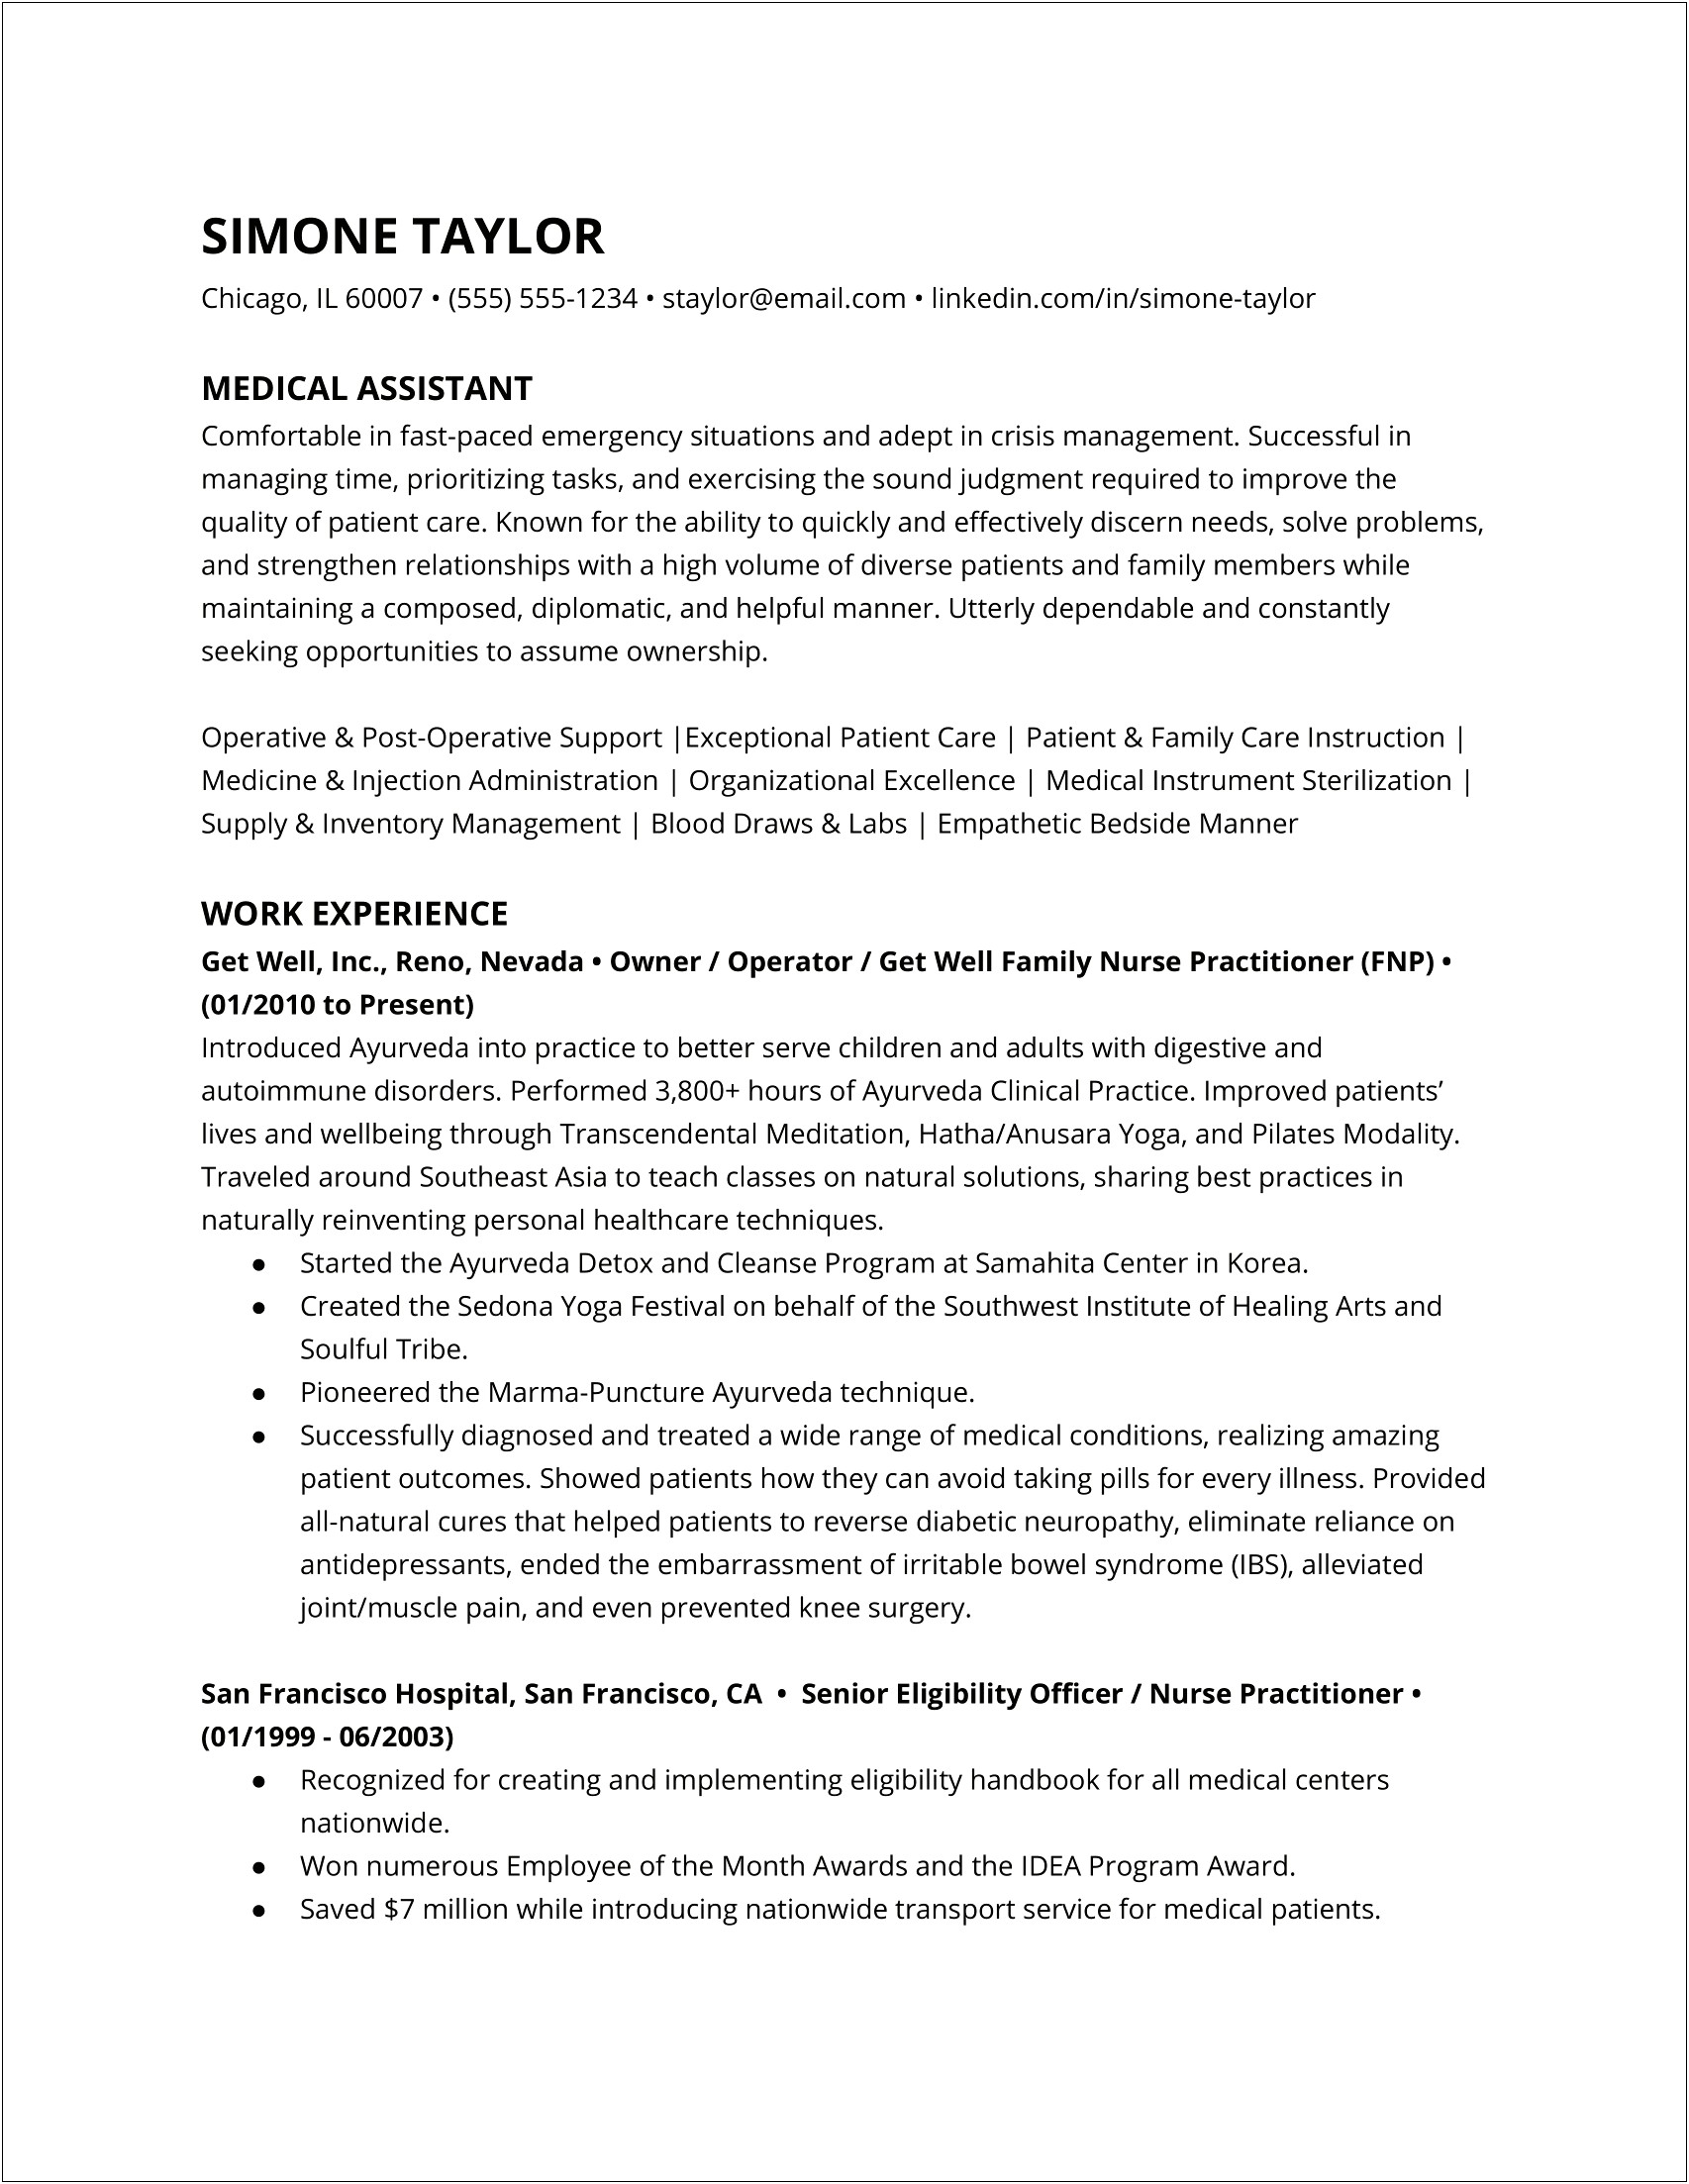 Mental Health Cna Job Description Resume